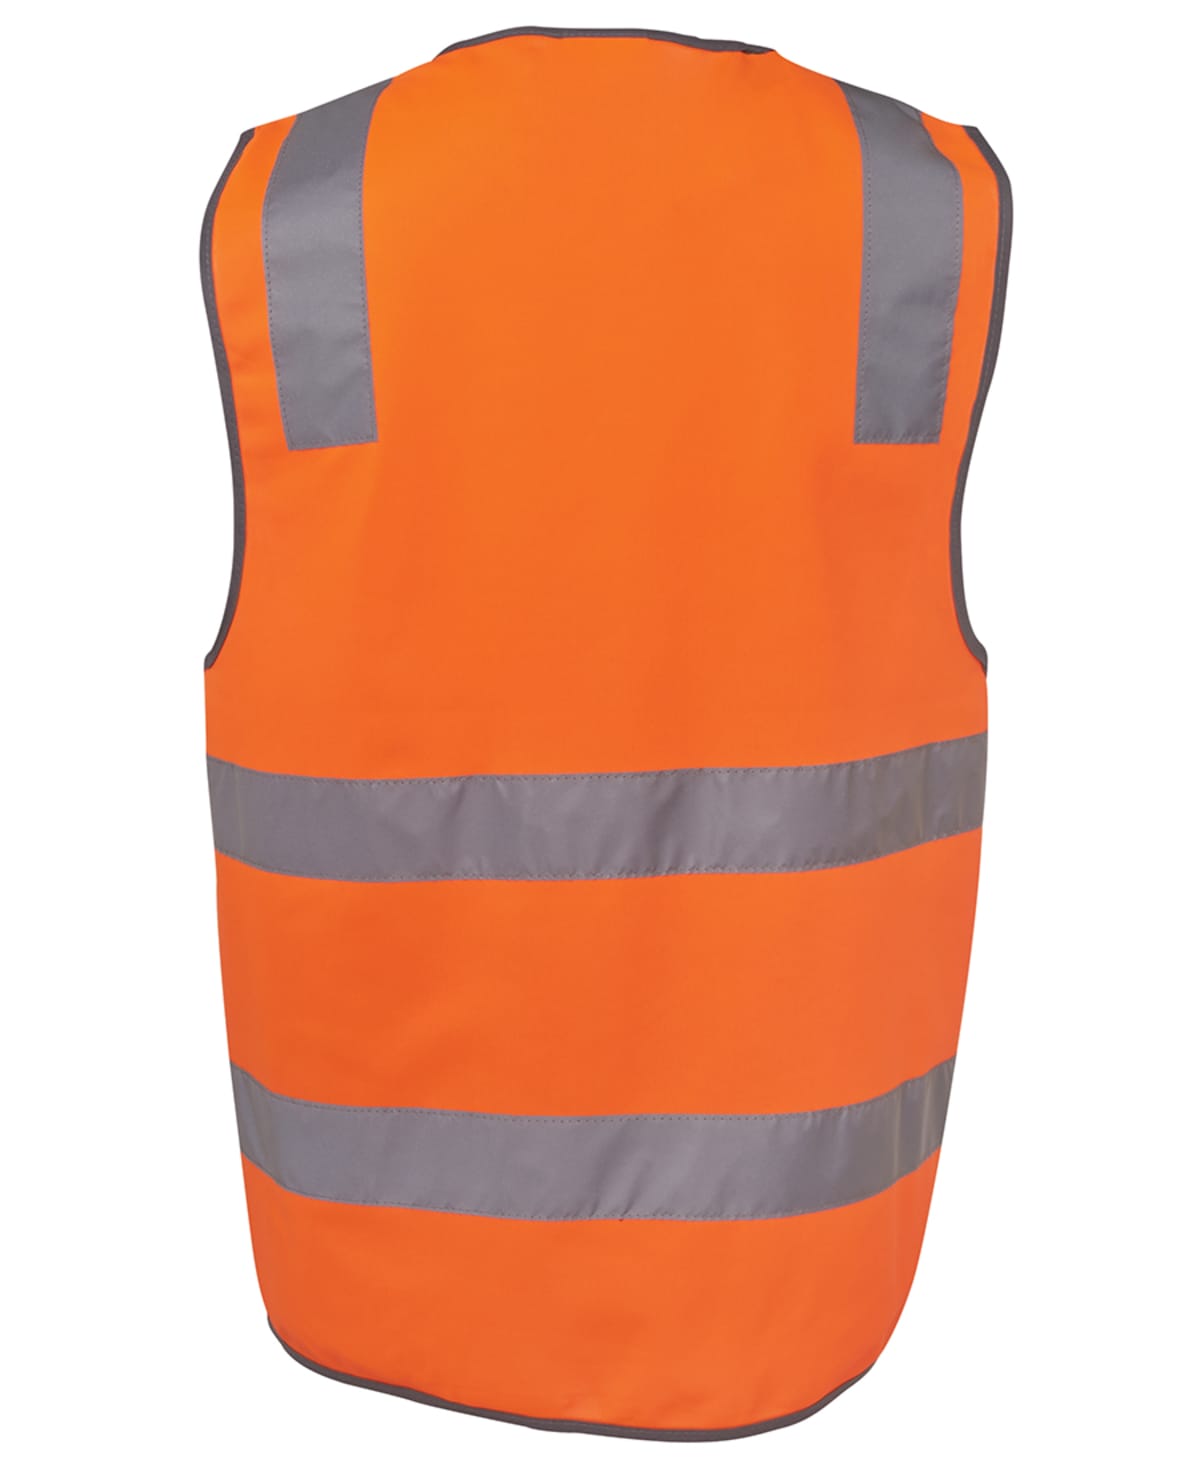 JB's Hi Vis (D+N) Safety Vest